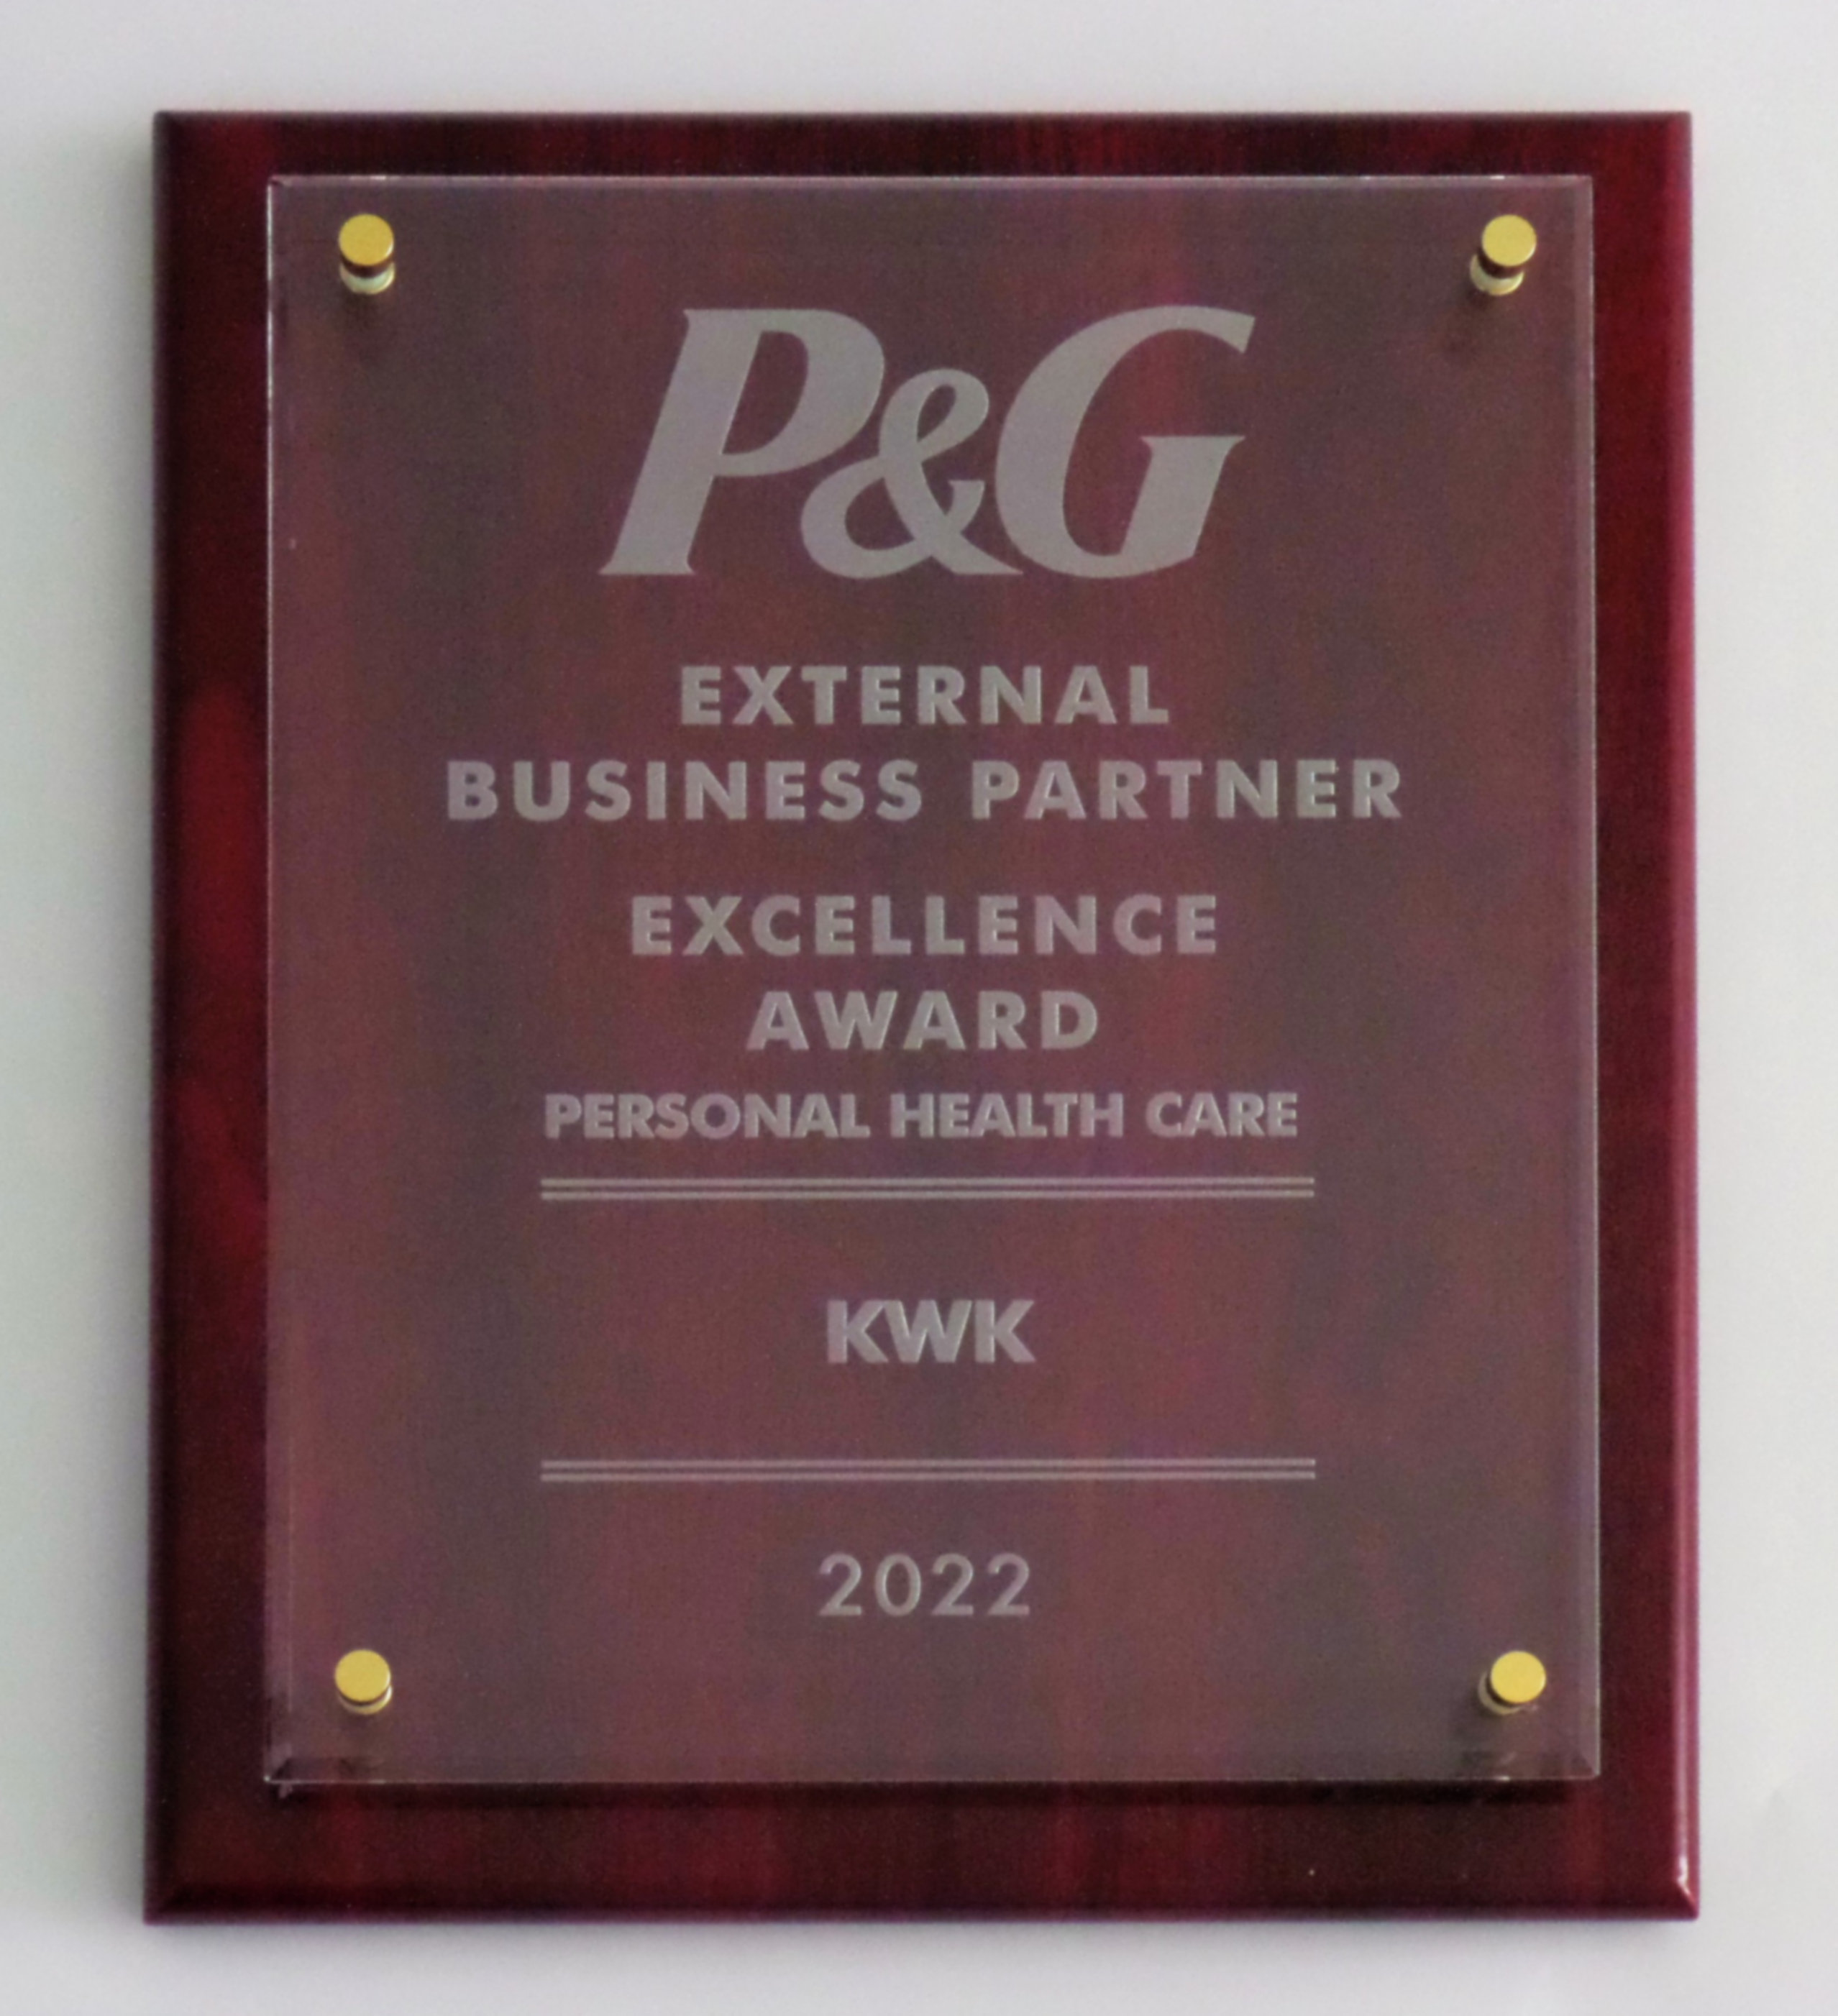 External Business Partner Excellence Award